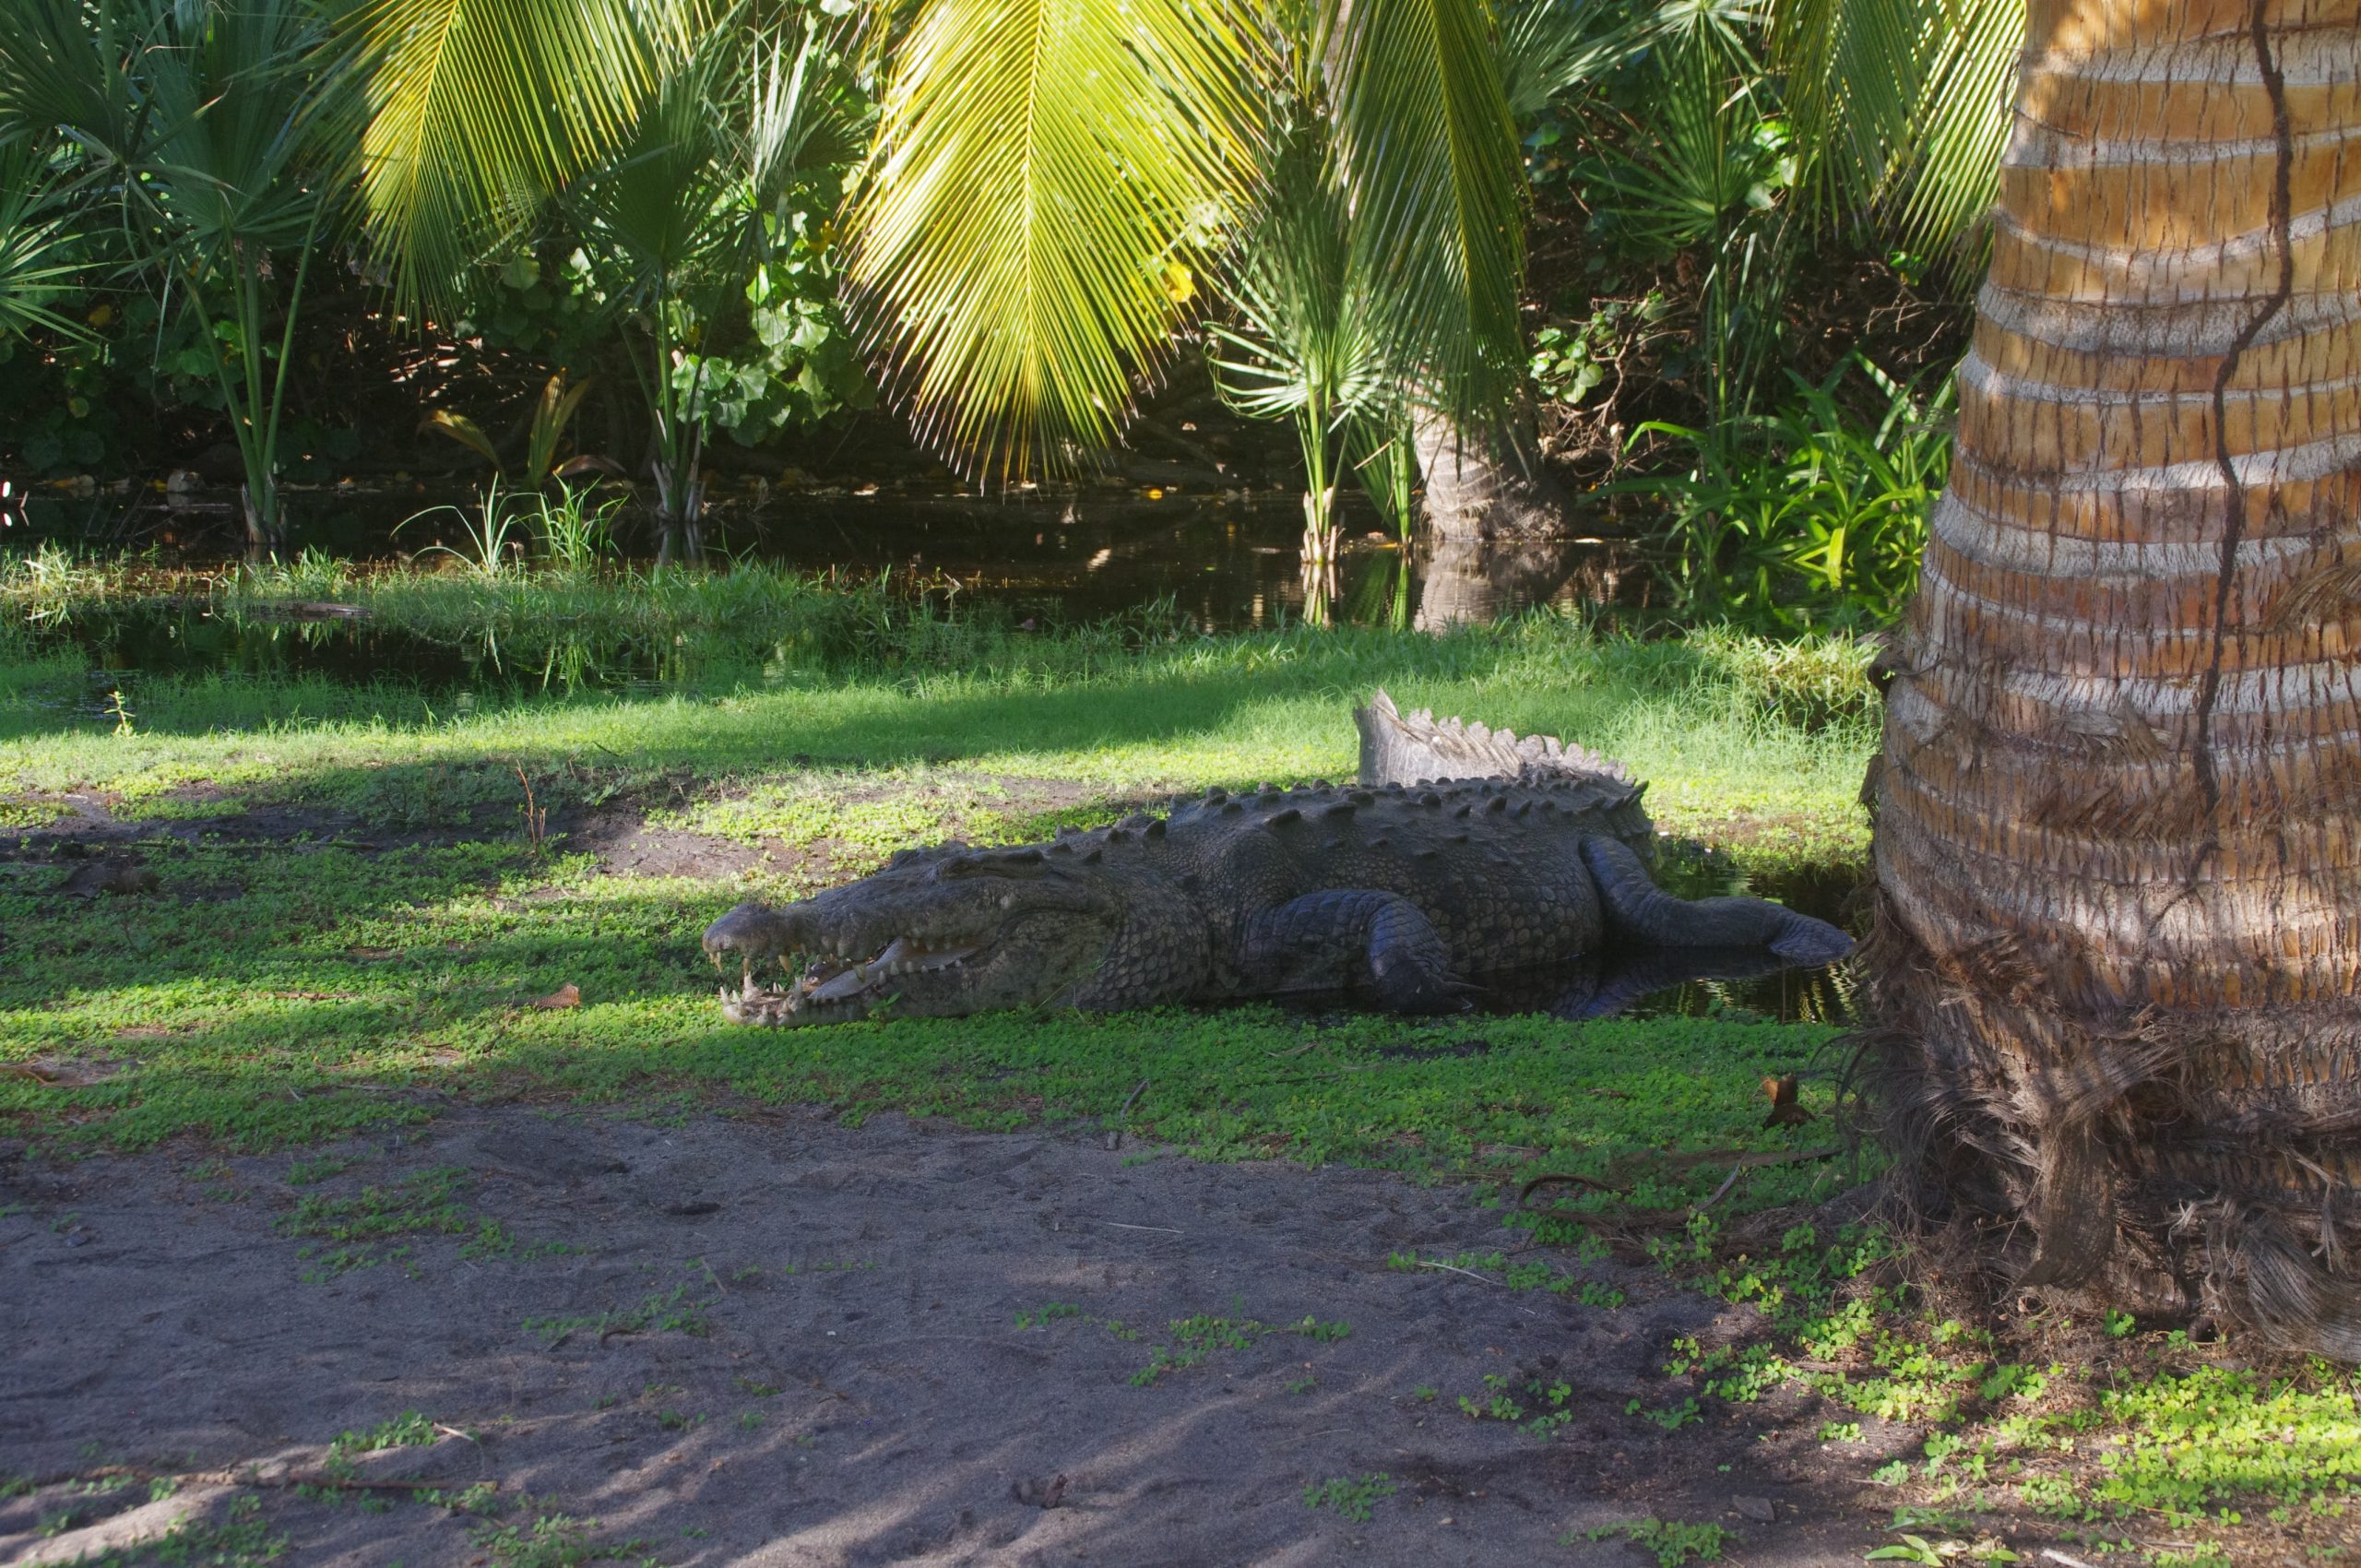 Puerto Escondido Crocodiles